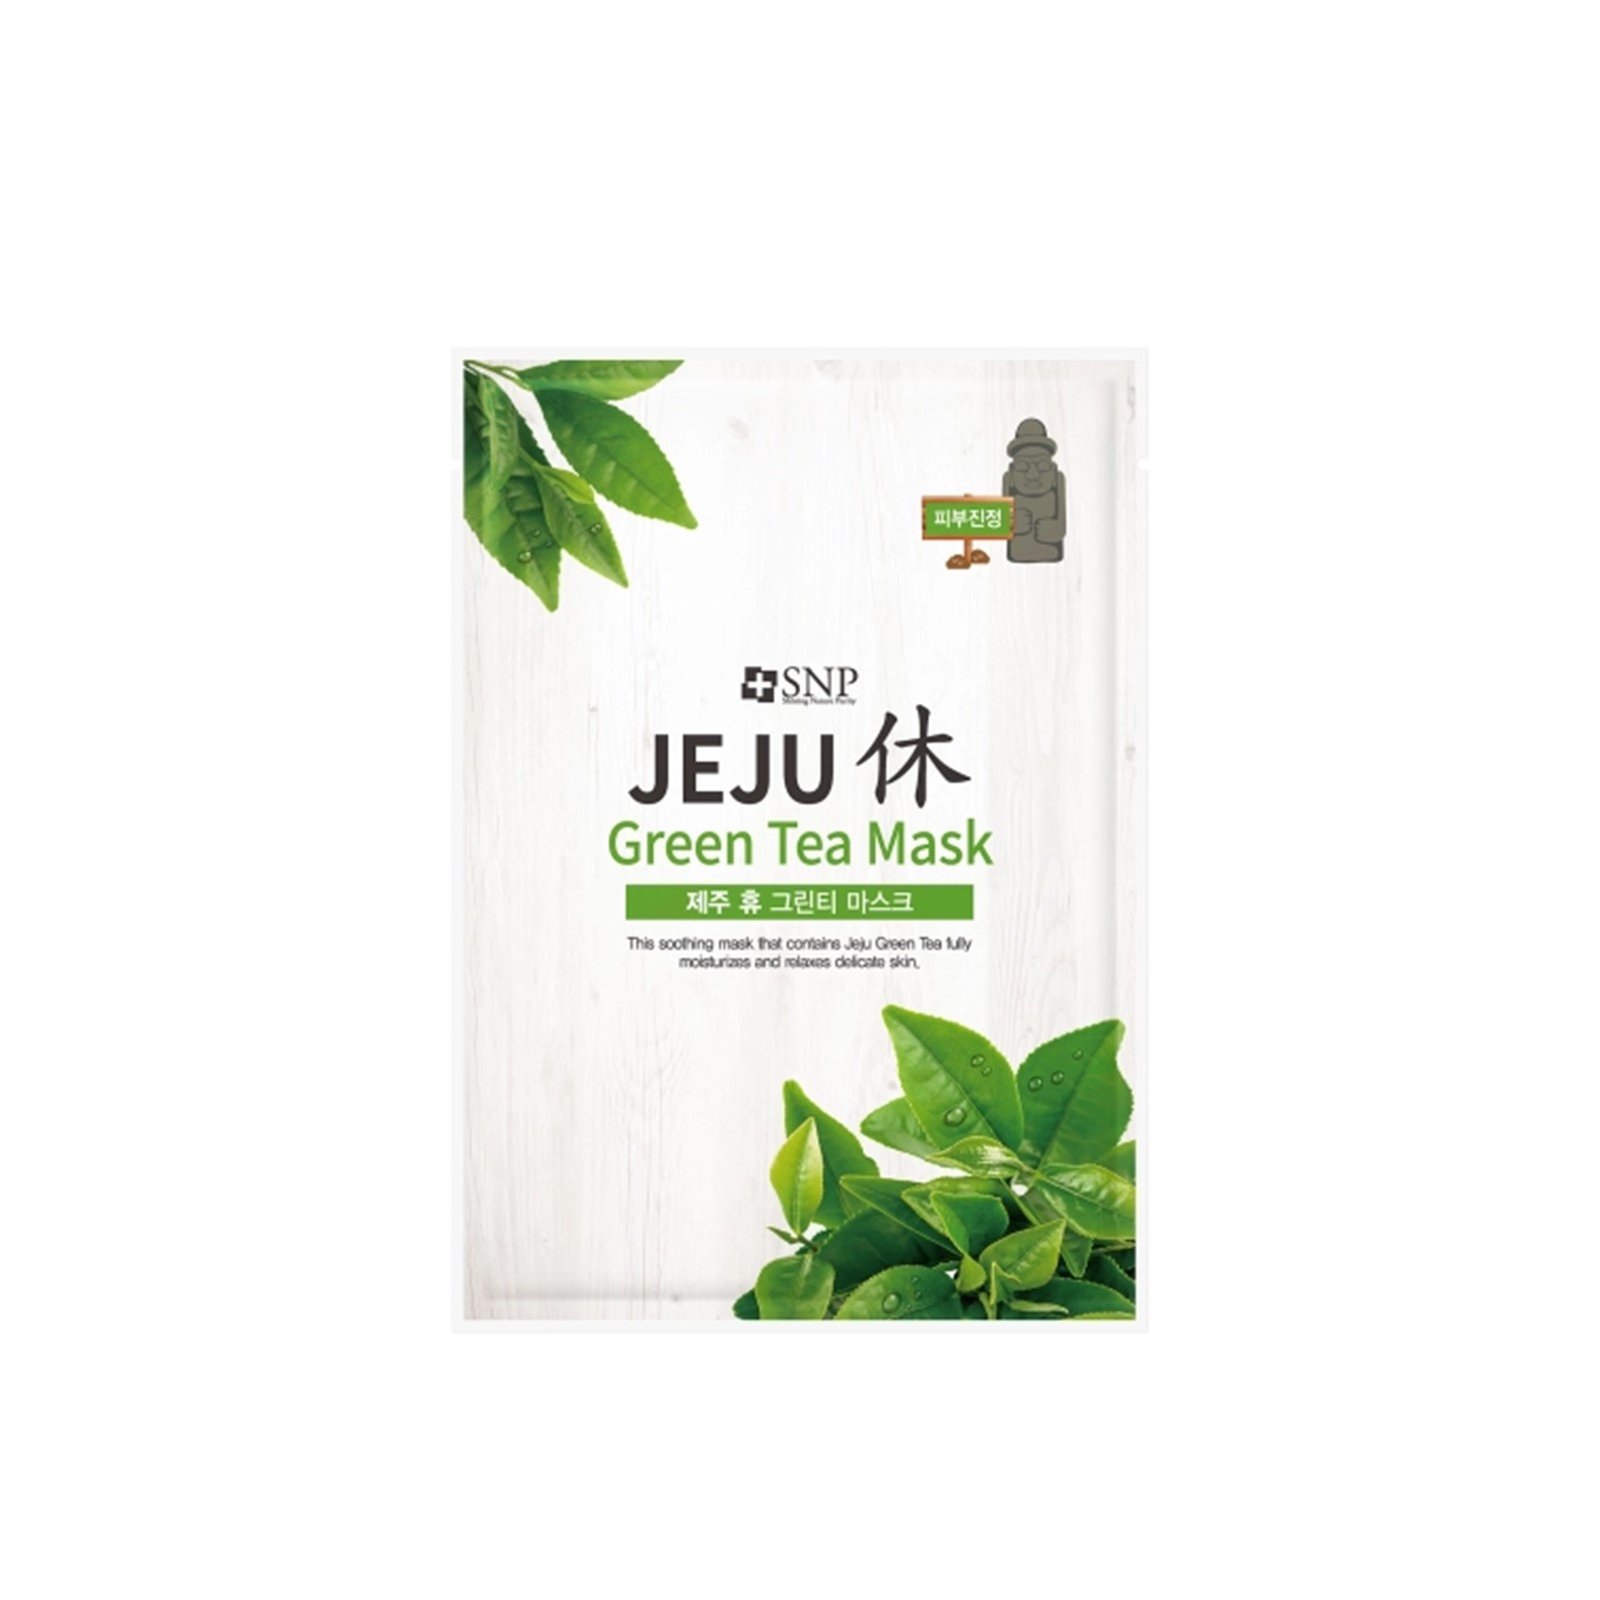 SNP Jeju Rest Green Tea Sheet Mask 22ml (0.74 fl oz)